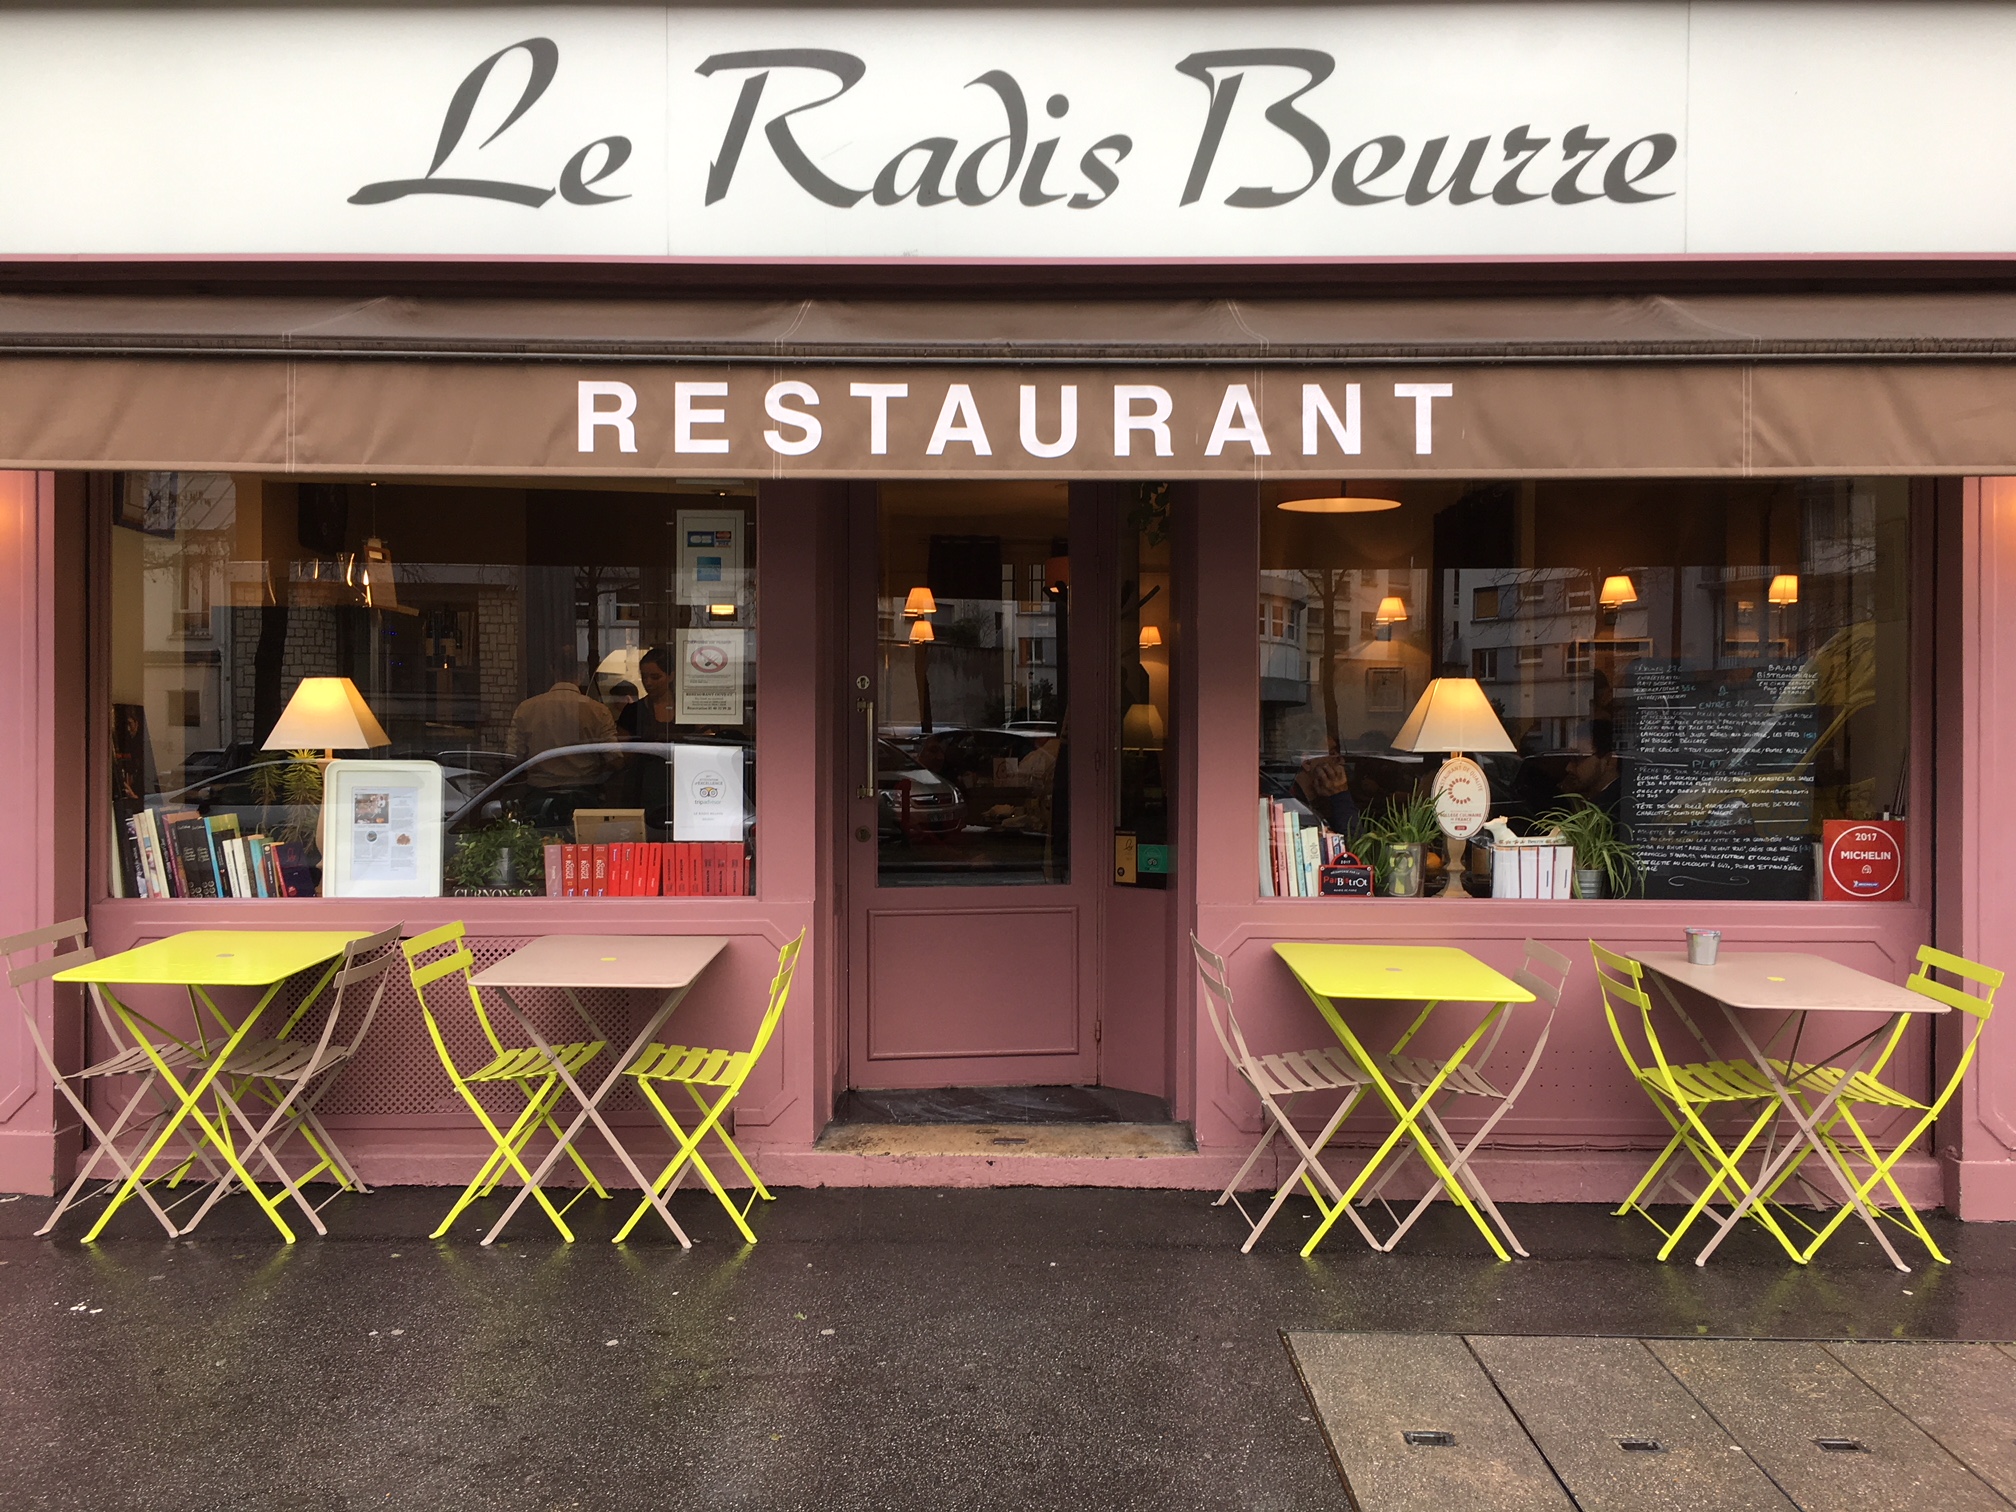 佐伯幸太郎の美女と美食三昧「パリ15区のこだわりレストラン、Le radis beurre」